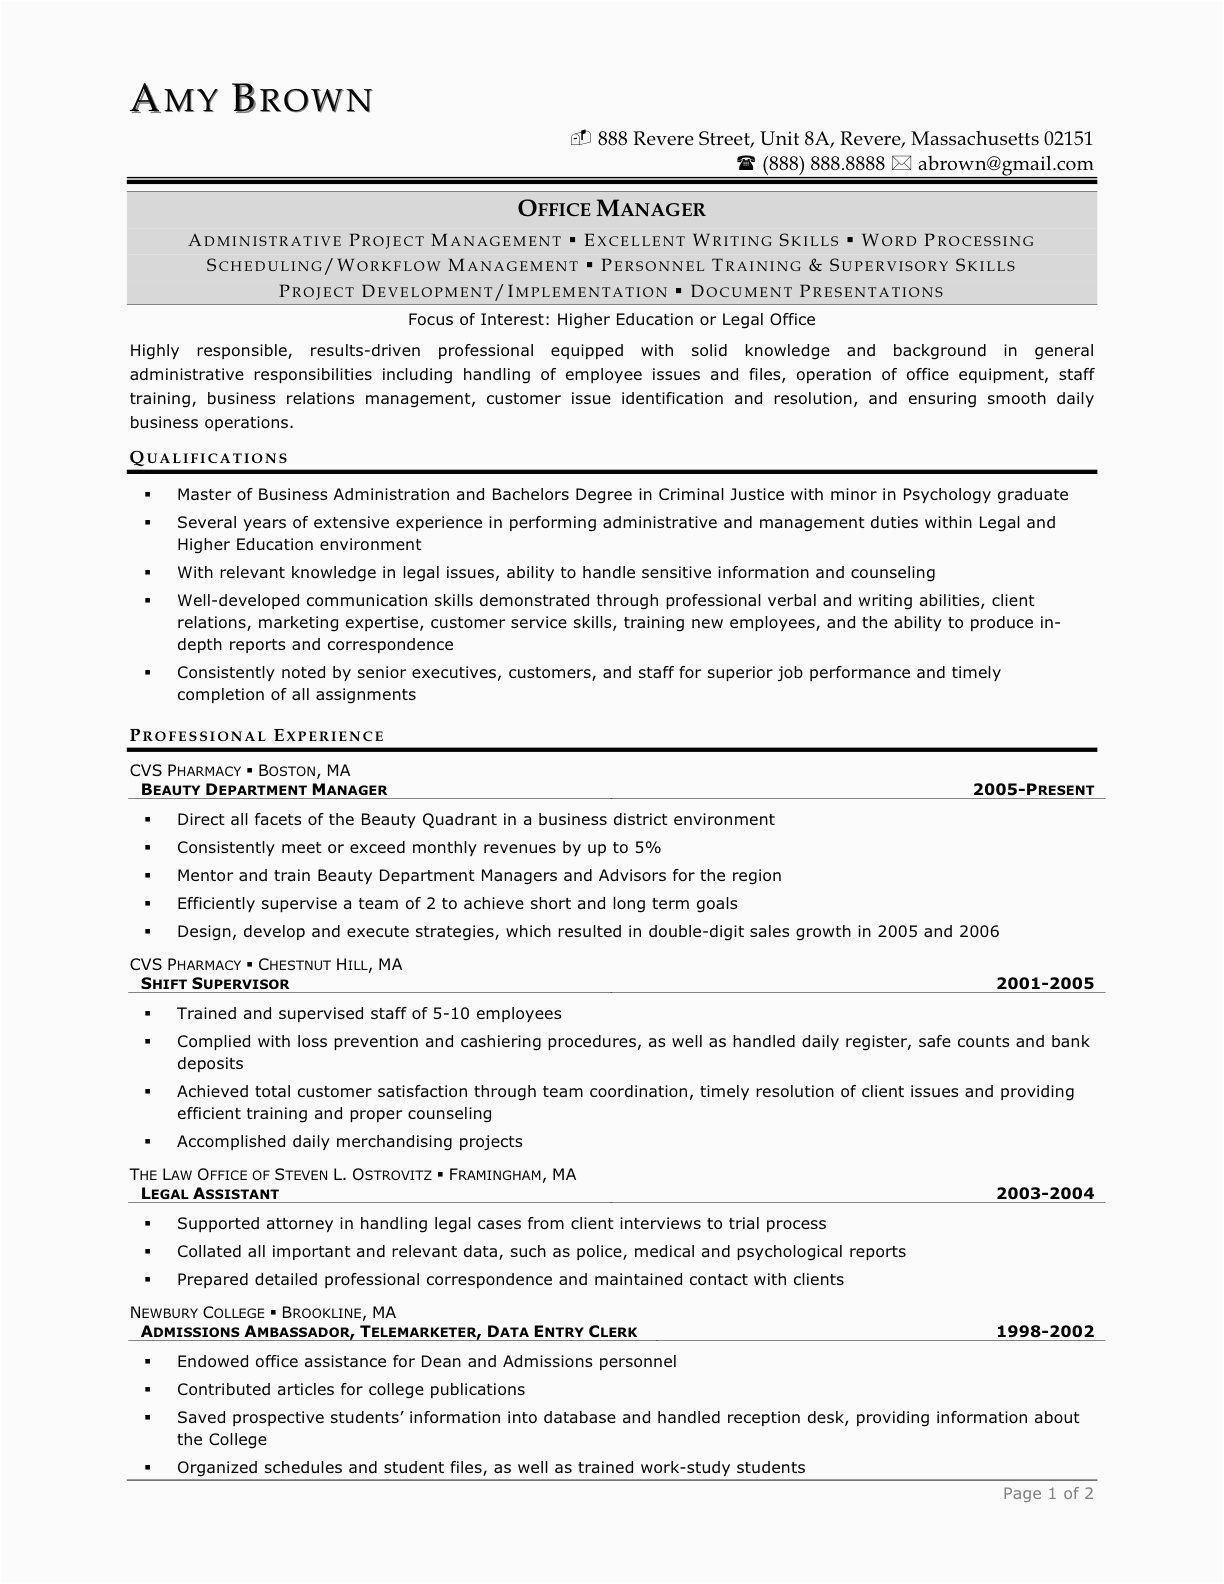 Sample Resume for Pharmacist In the Philippines Pharmacist Resume Sample Philippines Coverletterpedia